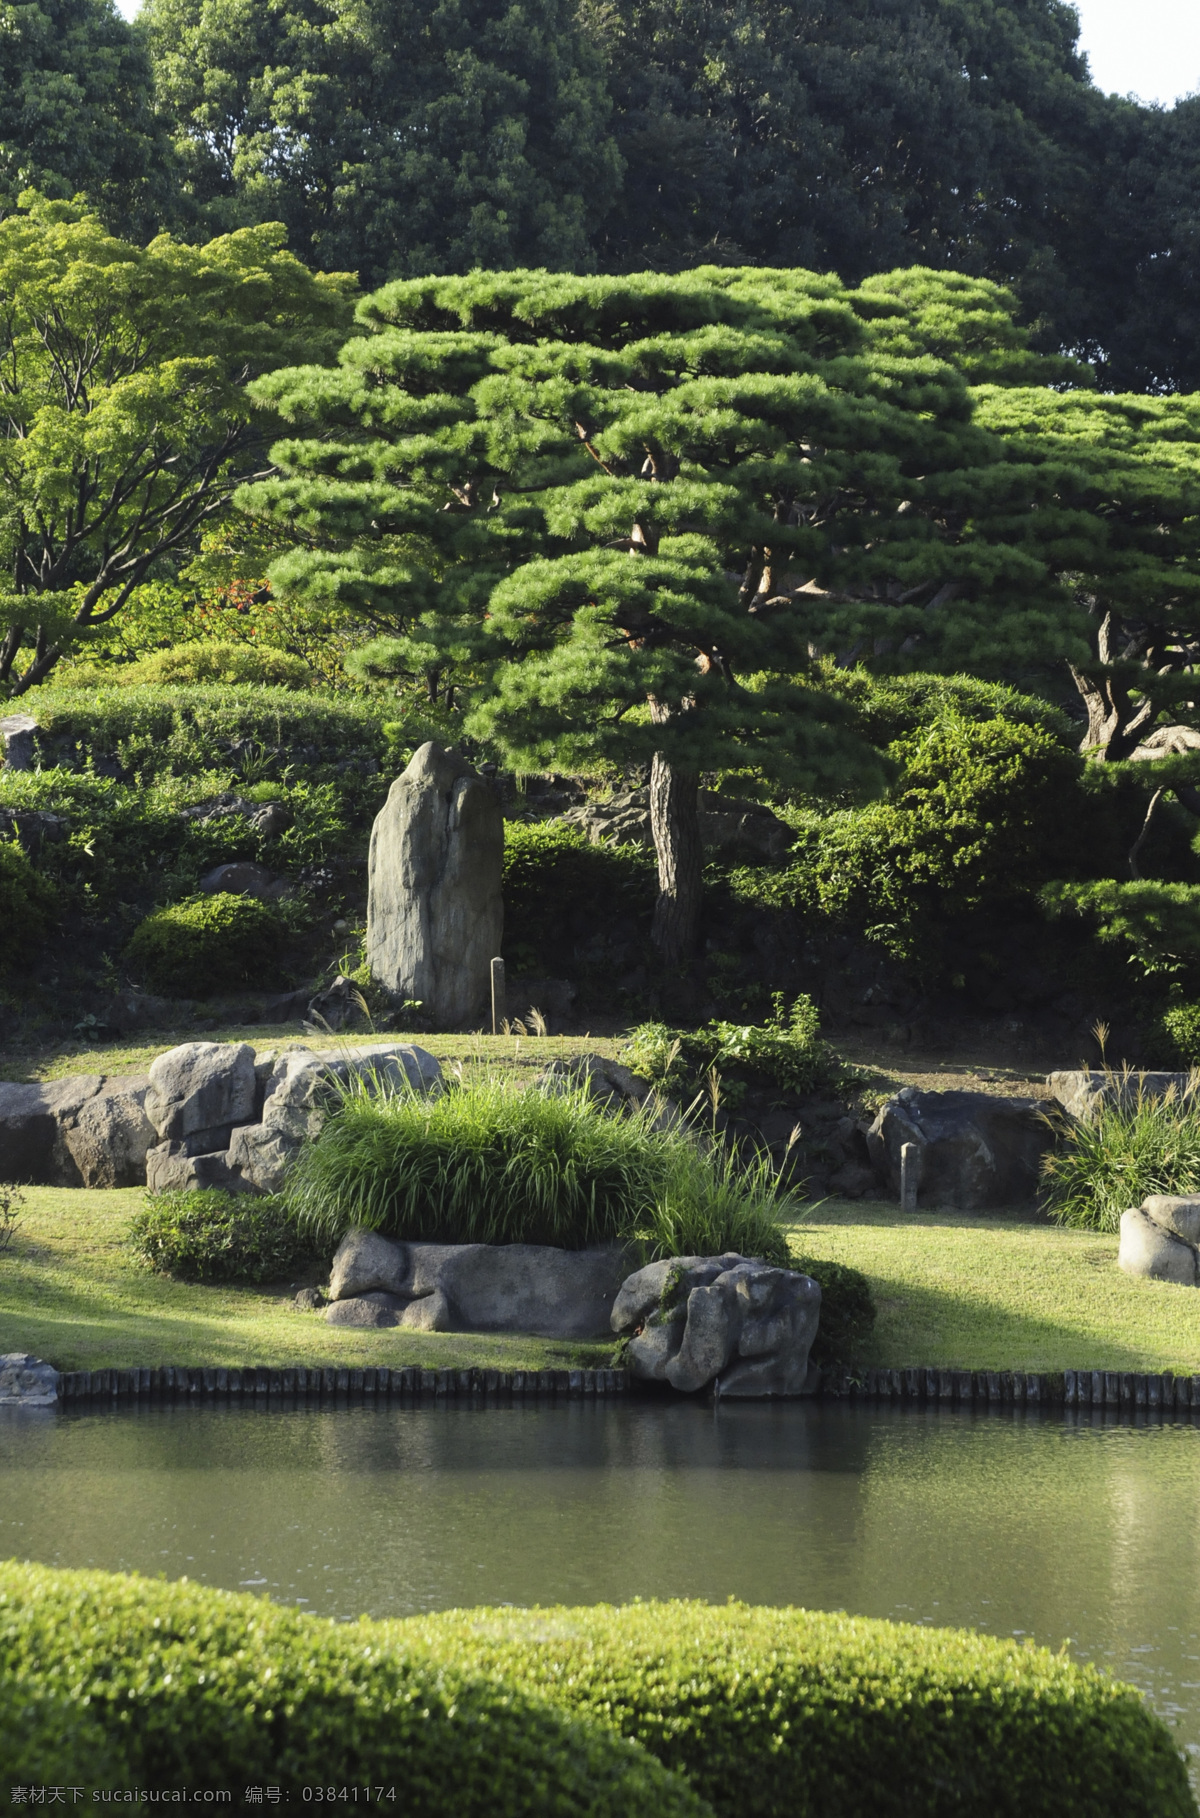 美丽水池风景 水池风景 湖泊风景 日本花园风景 日本风光 美丽风景 景色 公园风景 花园美景 树木风景 自然风景 自然景观 黑色